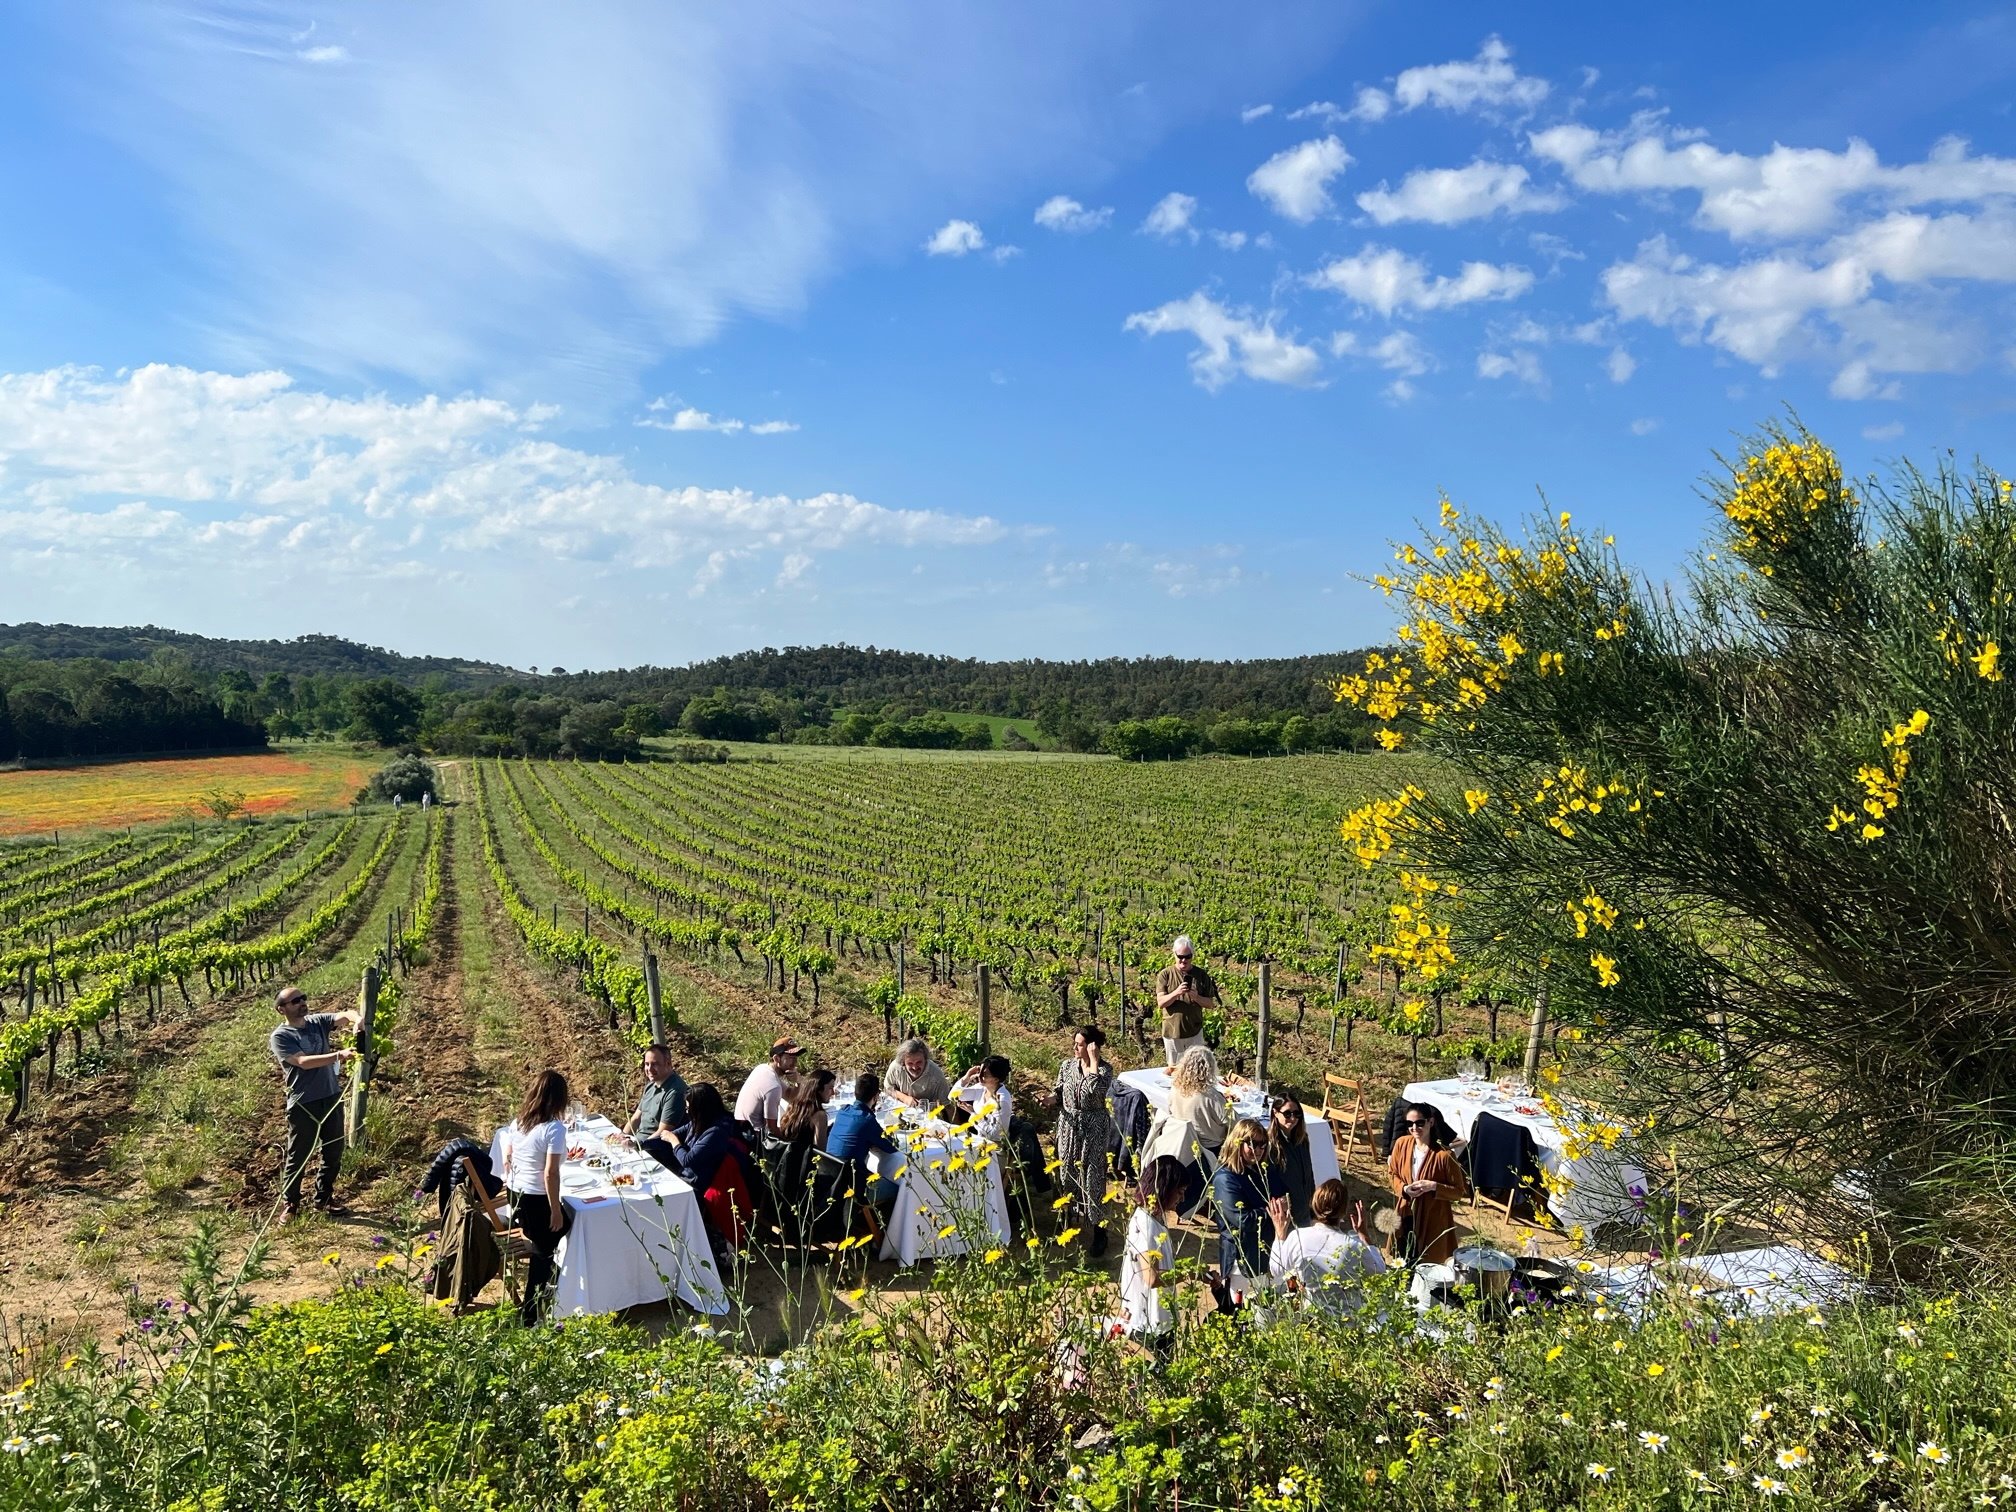 Torna el Festival Vívid: 10 plans imperdibles per gaudir del vi a la Costa Brava